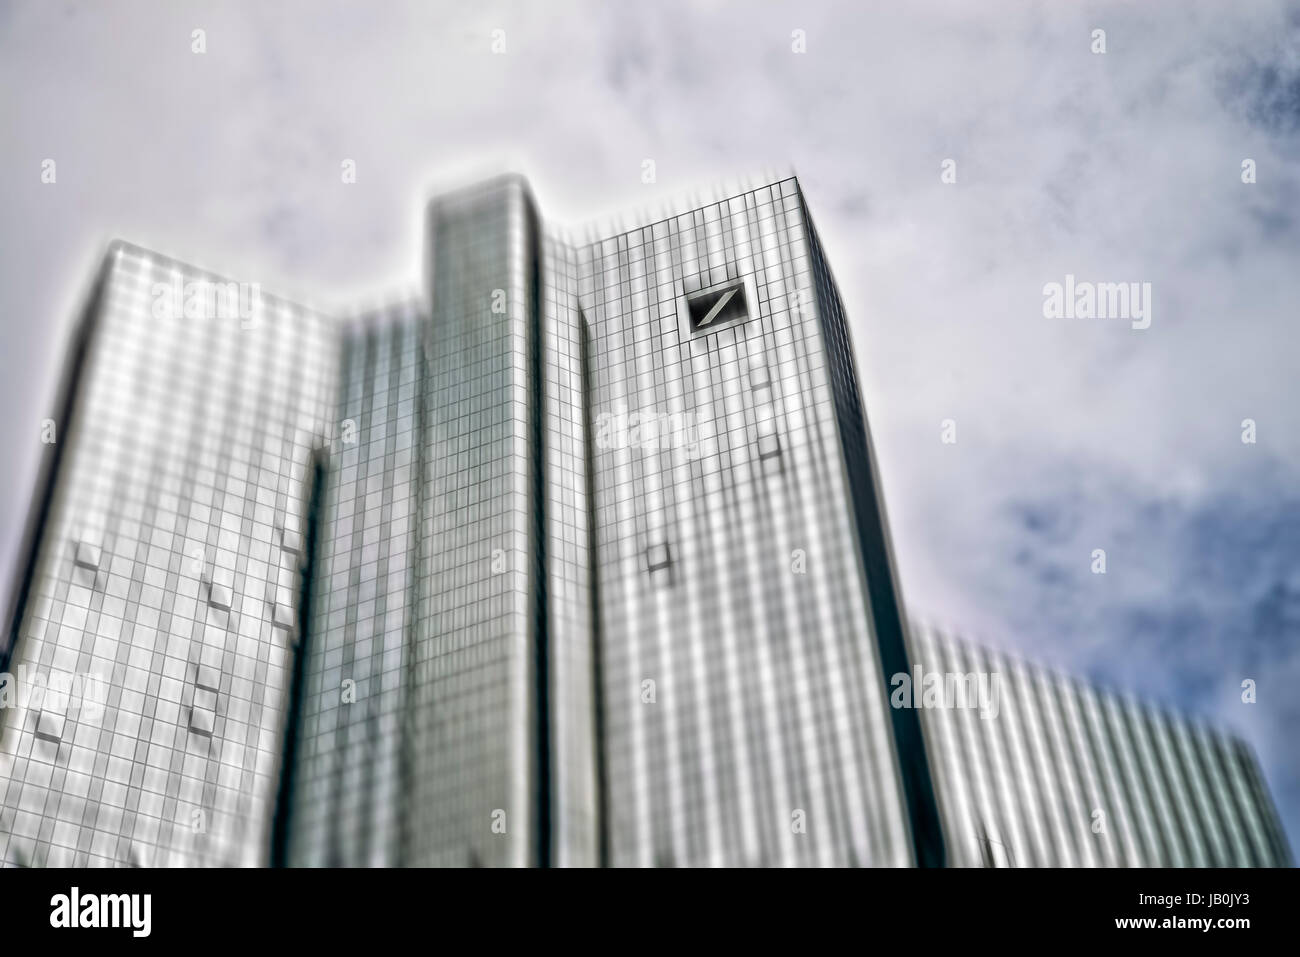 Deutsche Bank building in Frankfurt in detail with motion blur Stock Photo